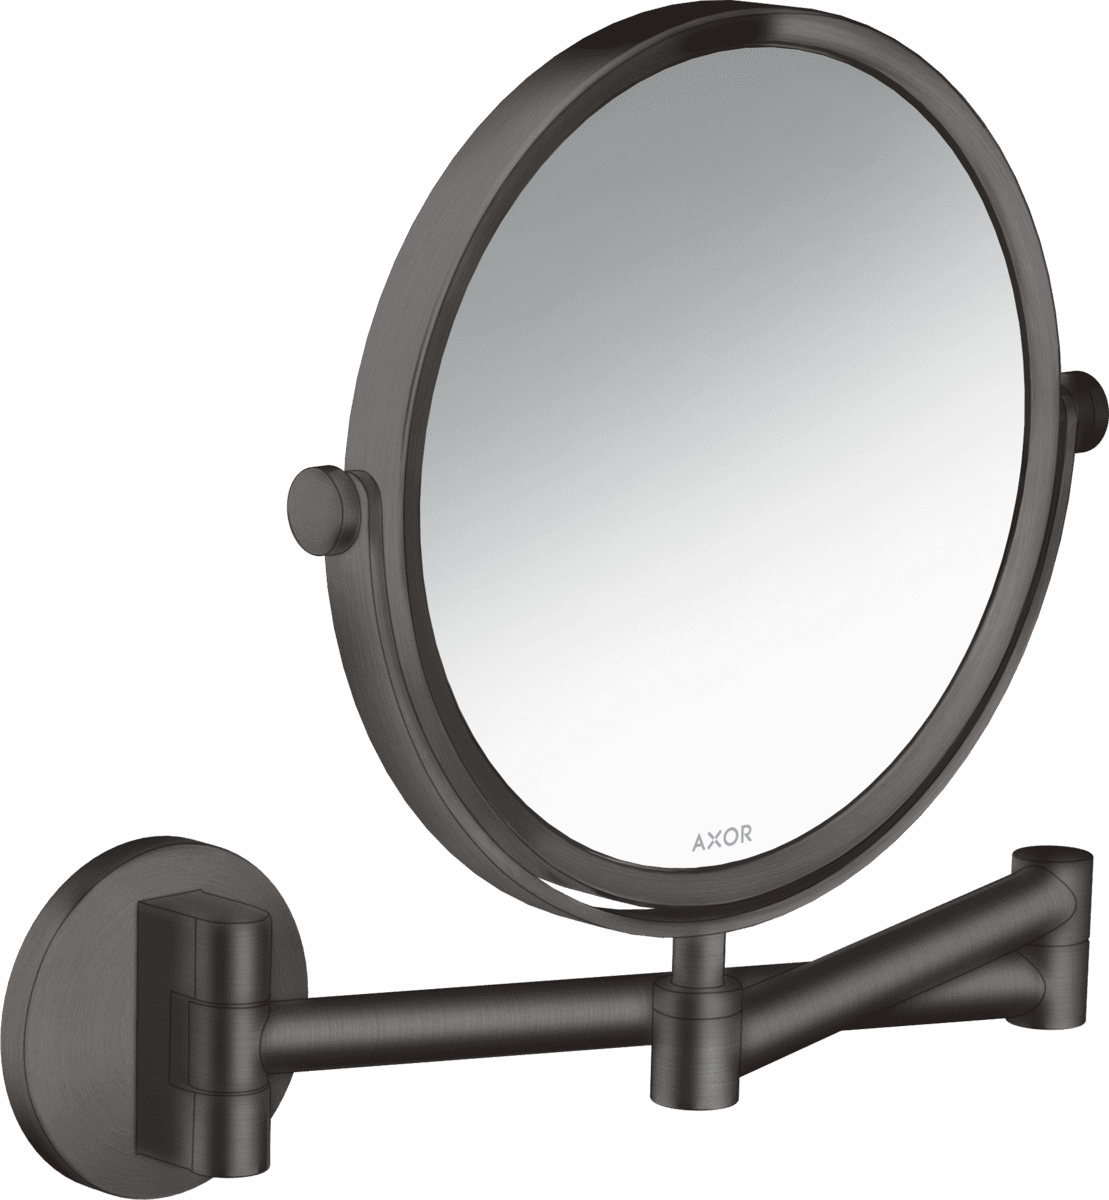 εικόνα του HANSGROHE AXOR Universal Circular Shaving mirror #42849340 - Brushed Black Chrome